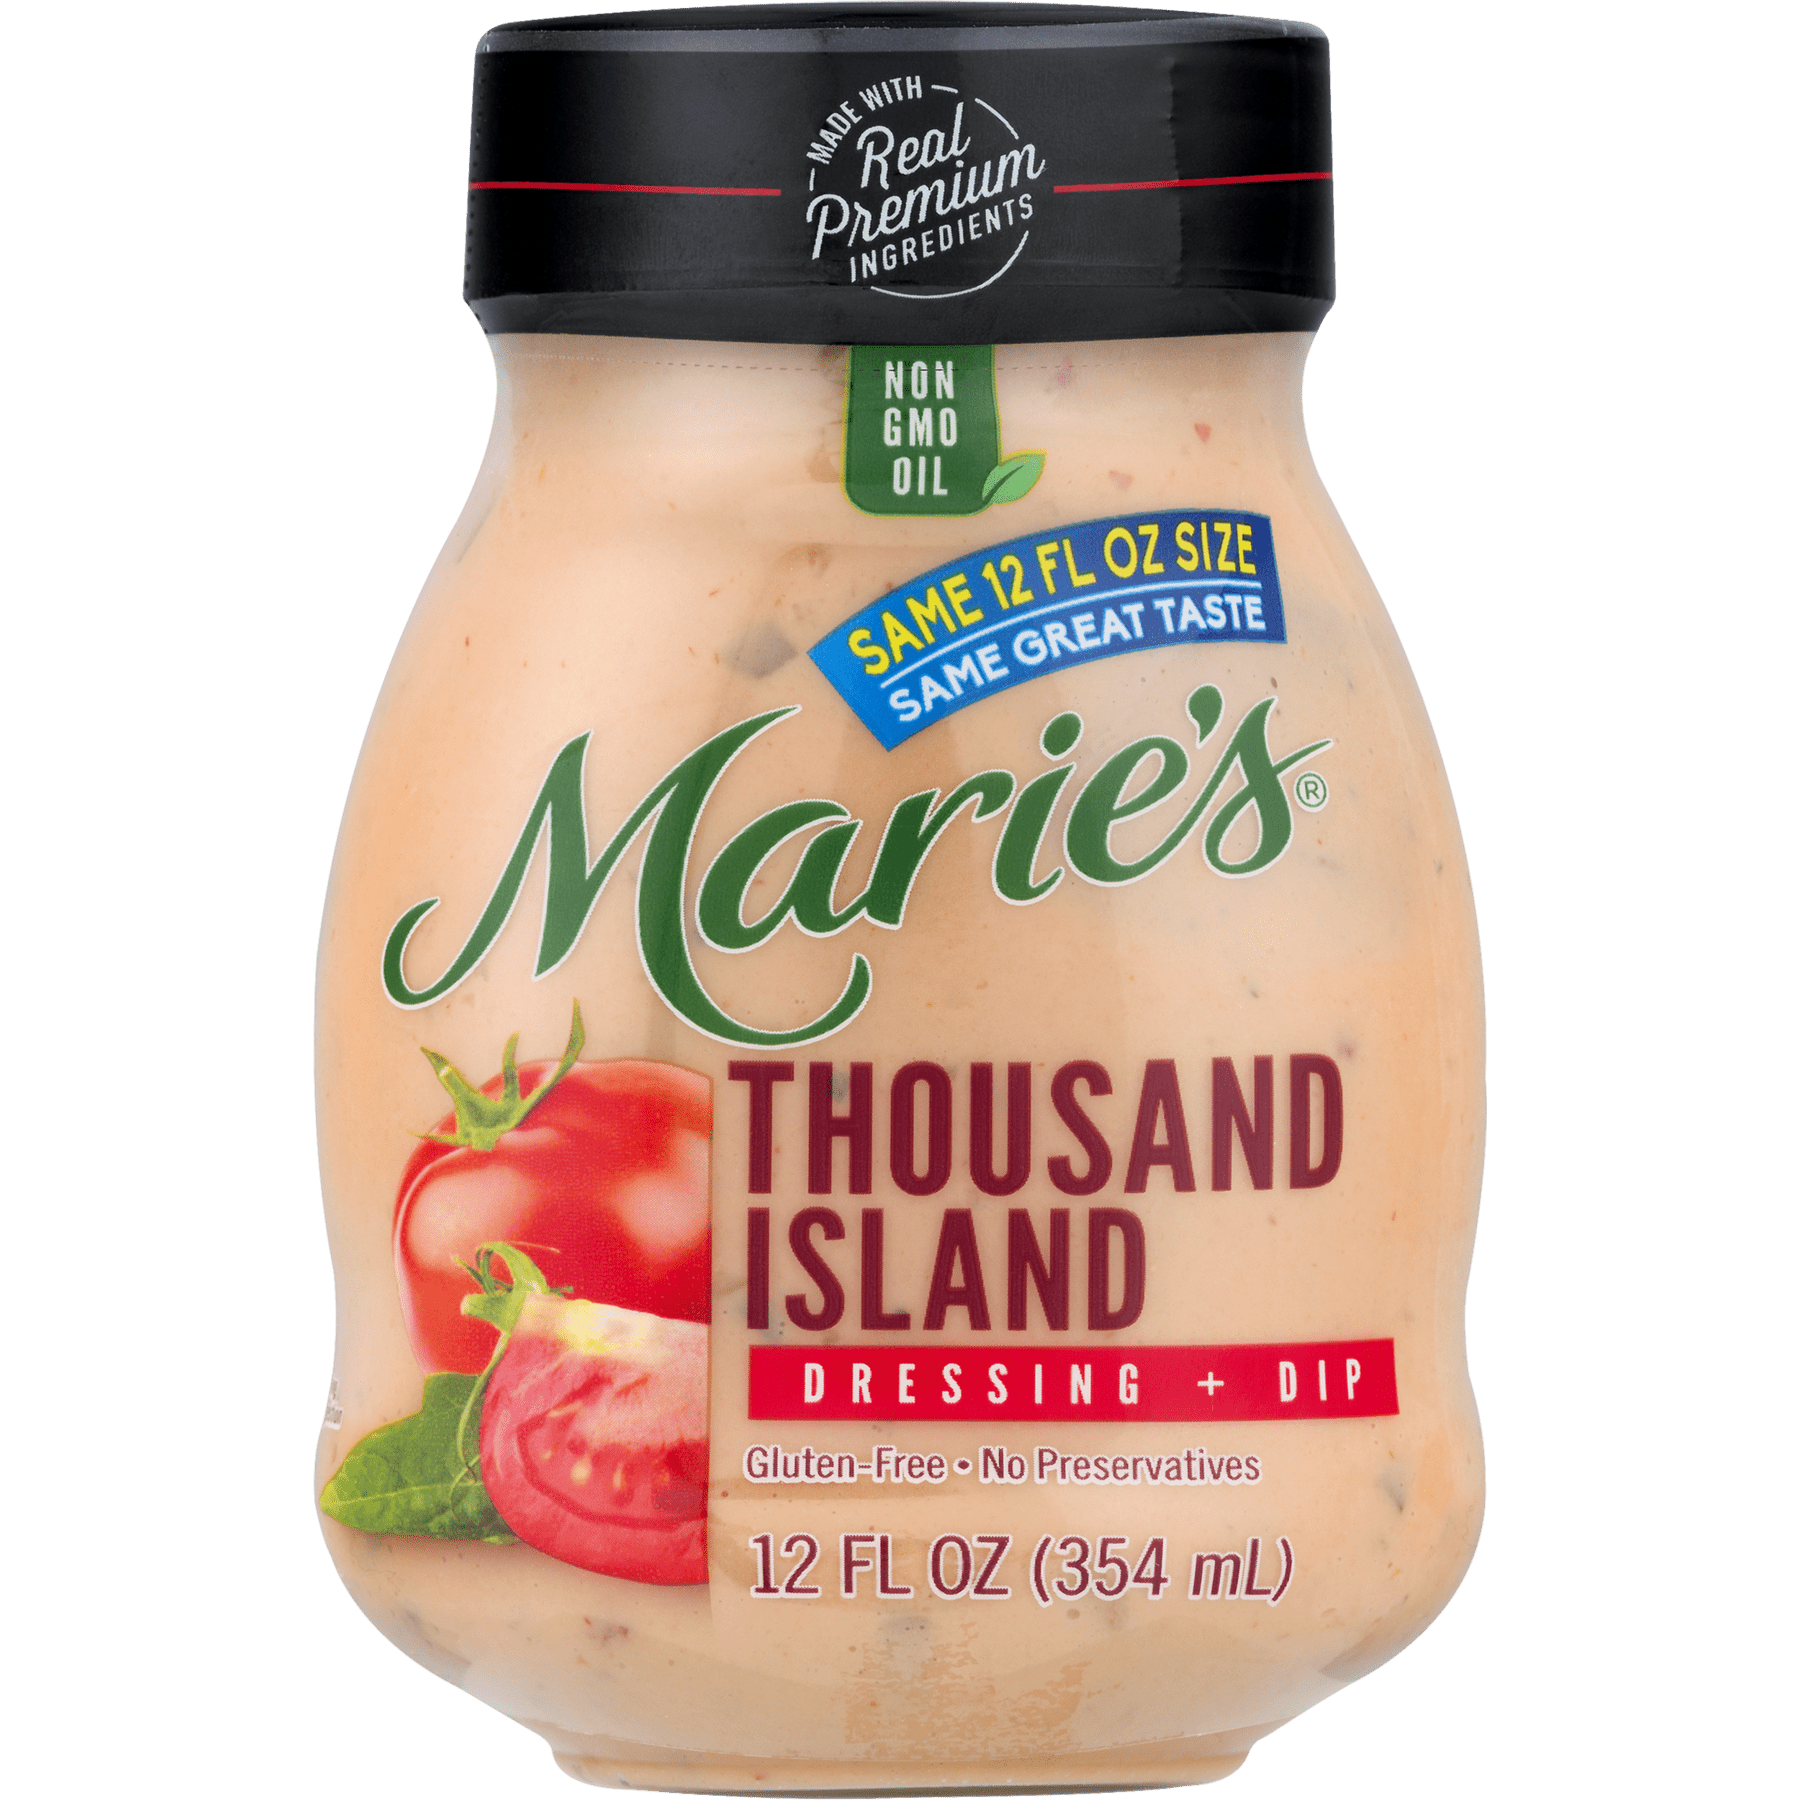 review maries original coleslaw dressing - youtube on marie's coleslaw dressing reviews